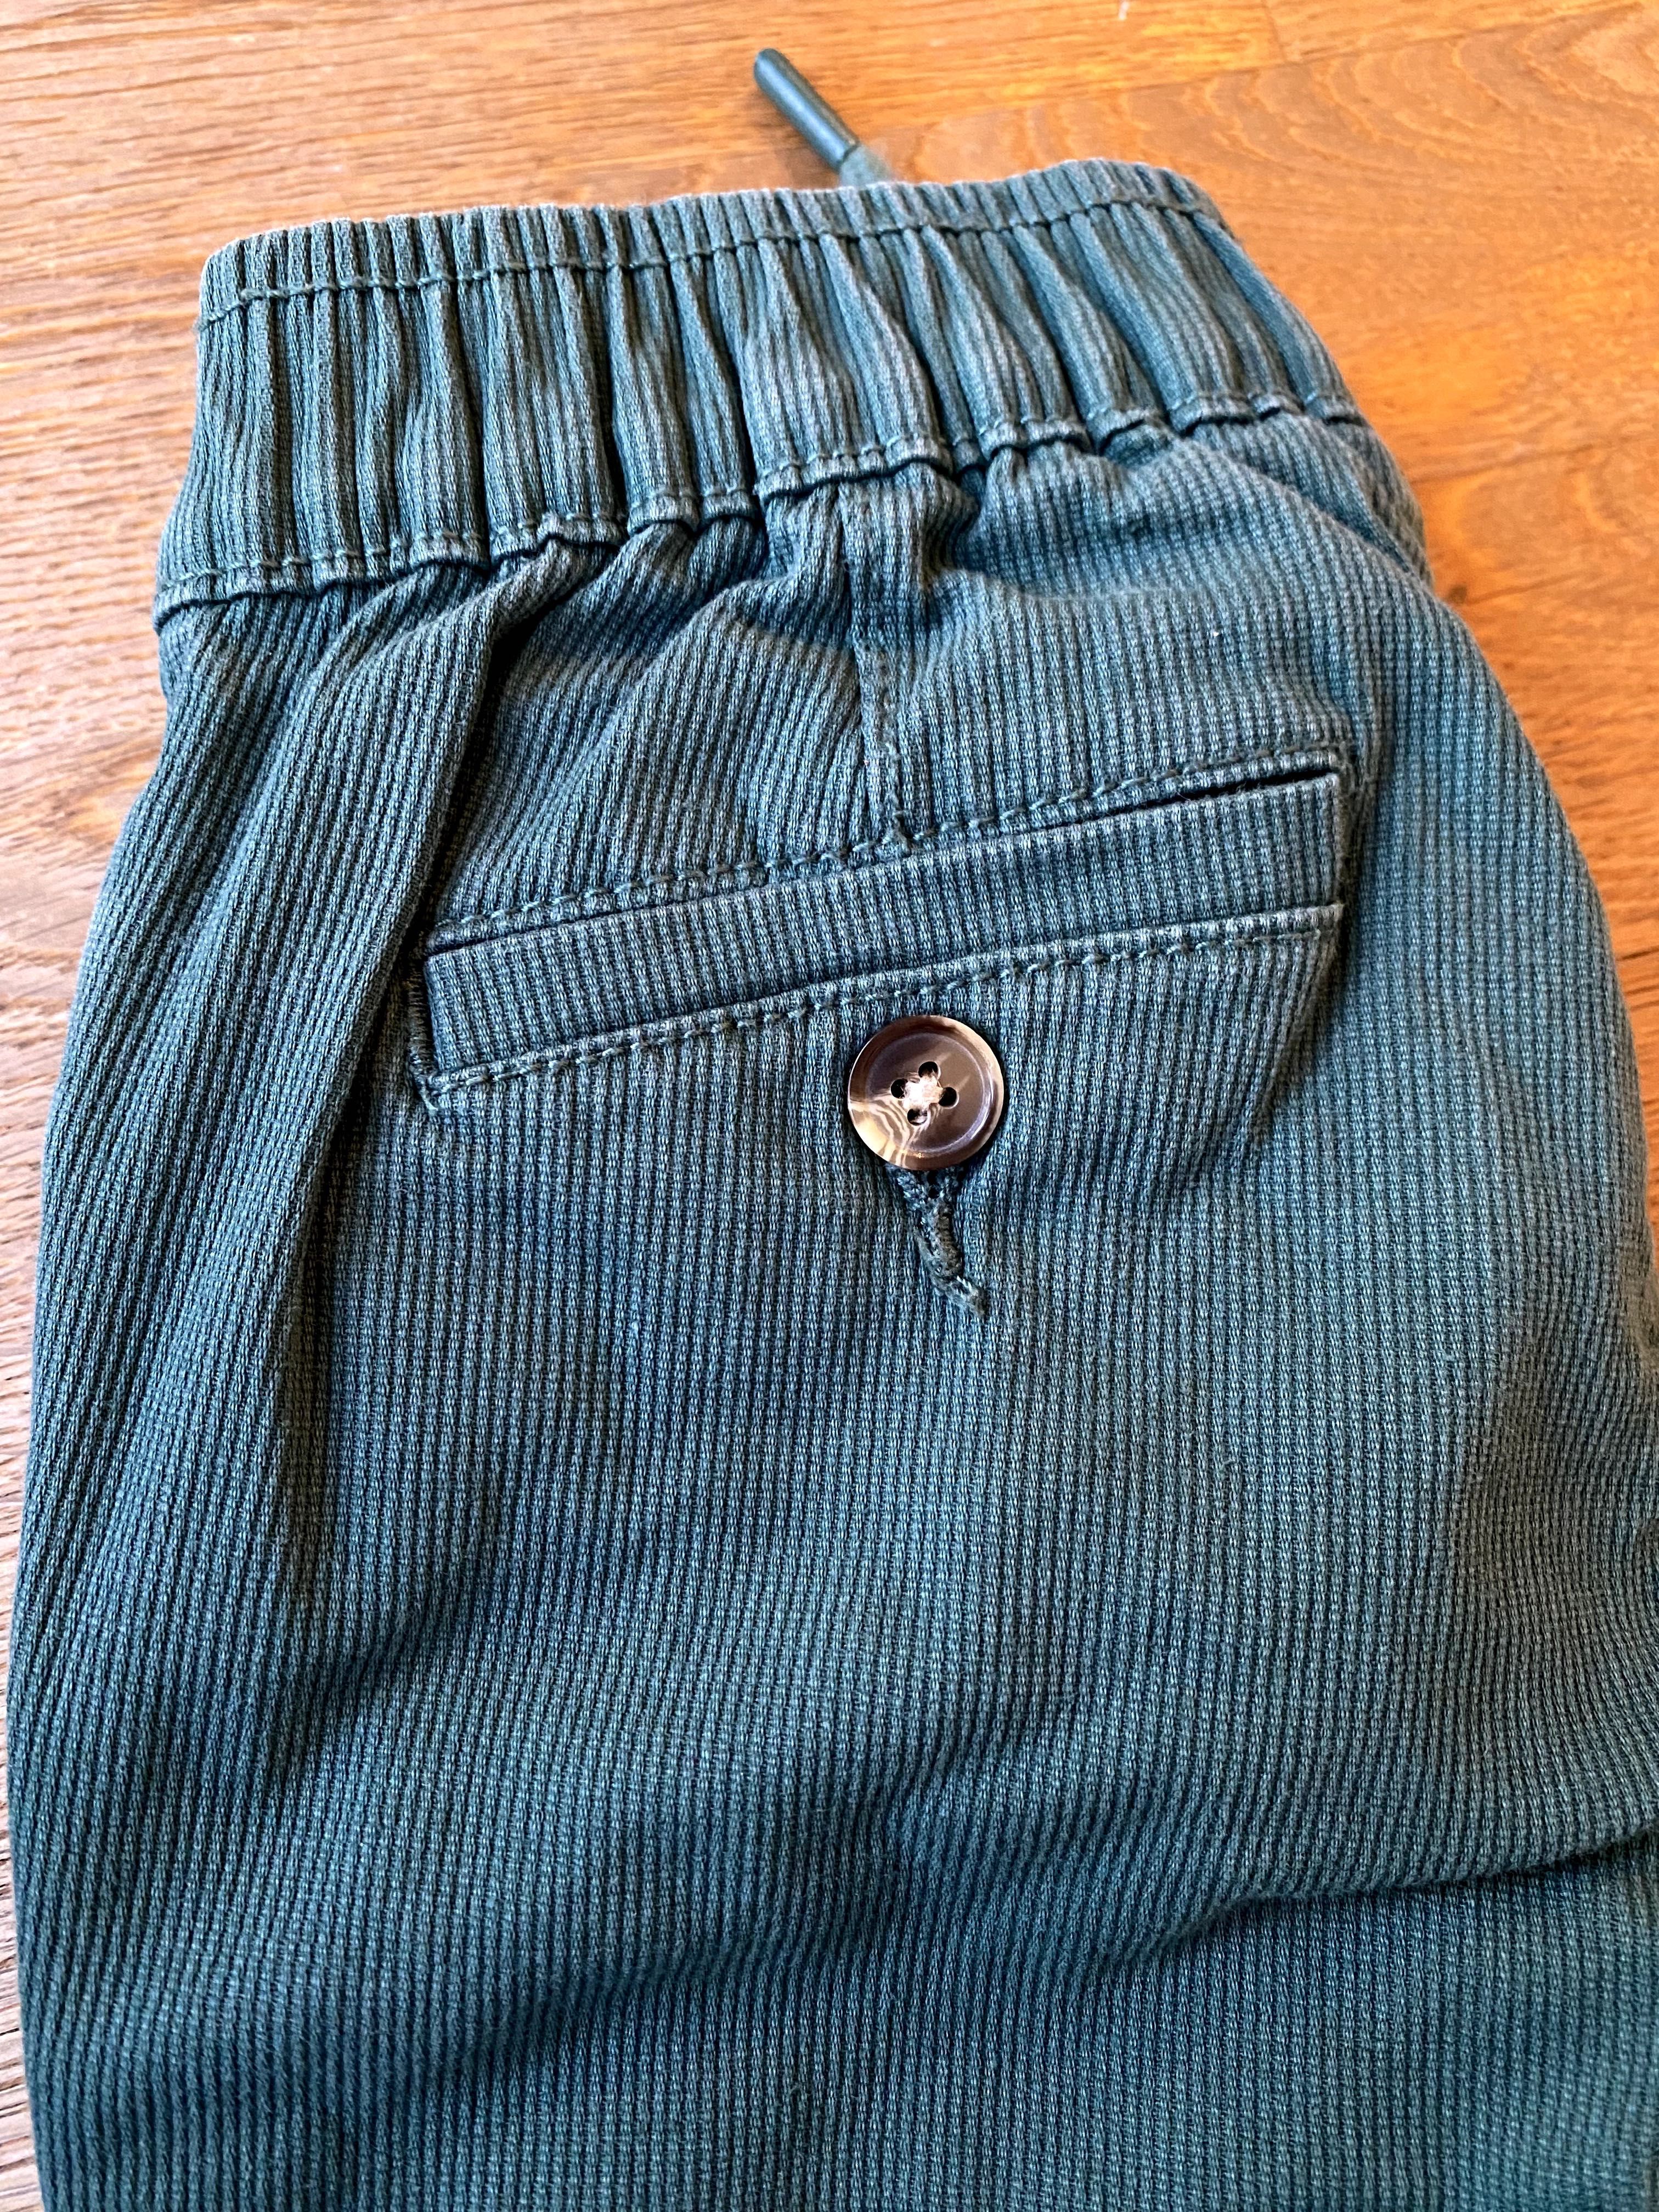 COOL CLUB spodnie chłopięce, rozmiar 110 cm